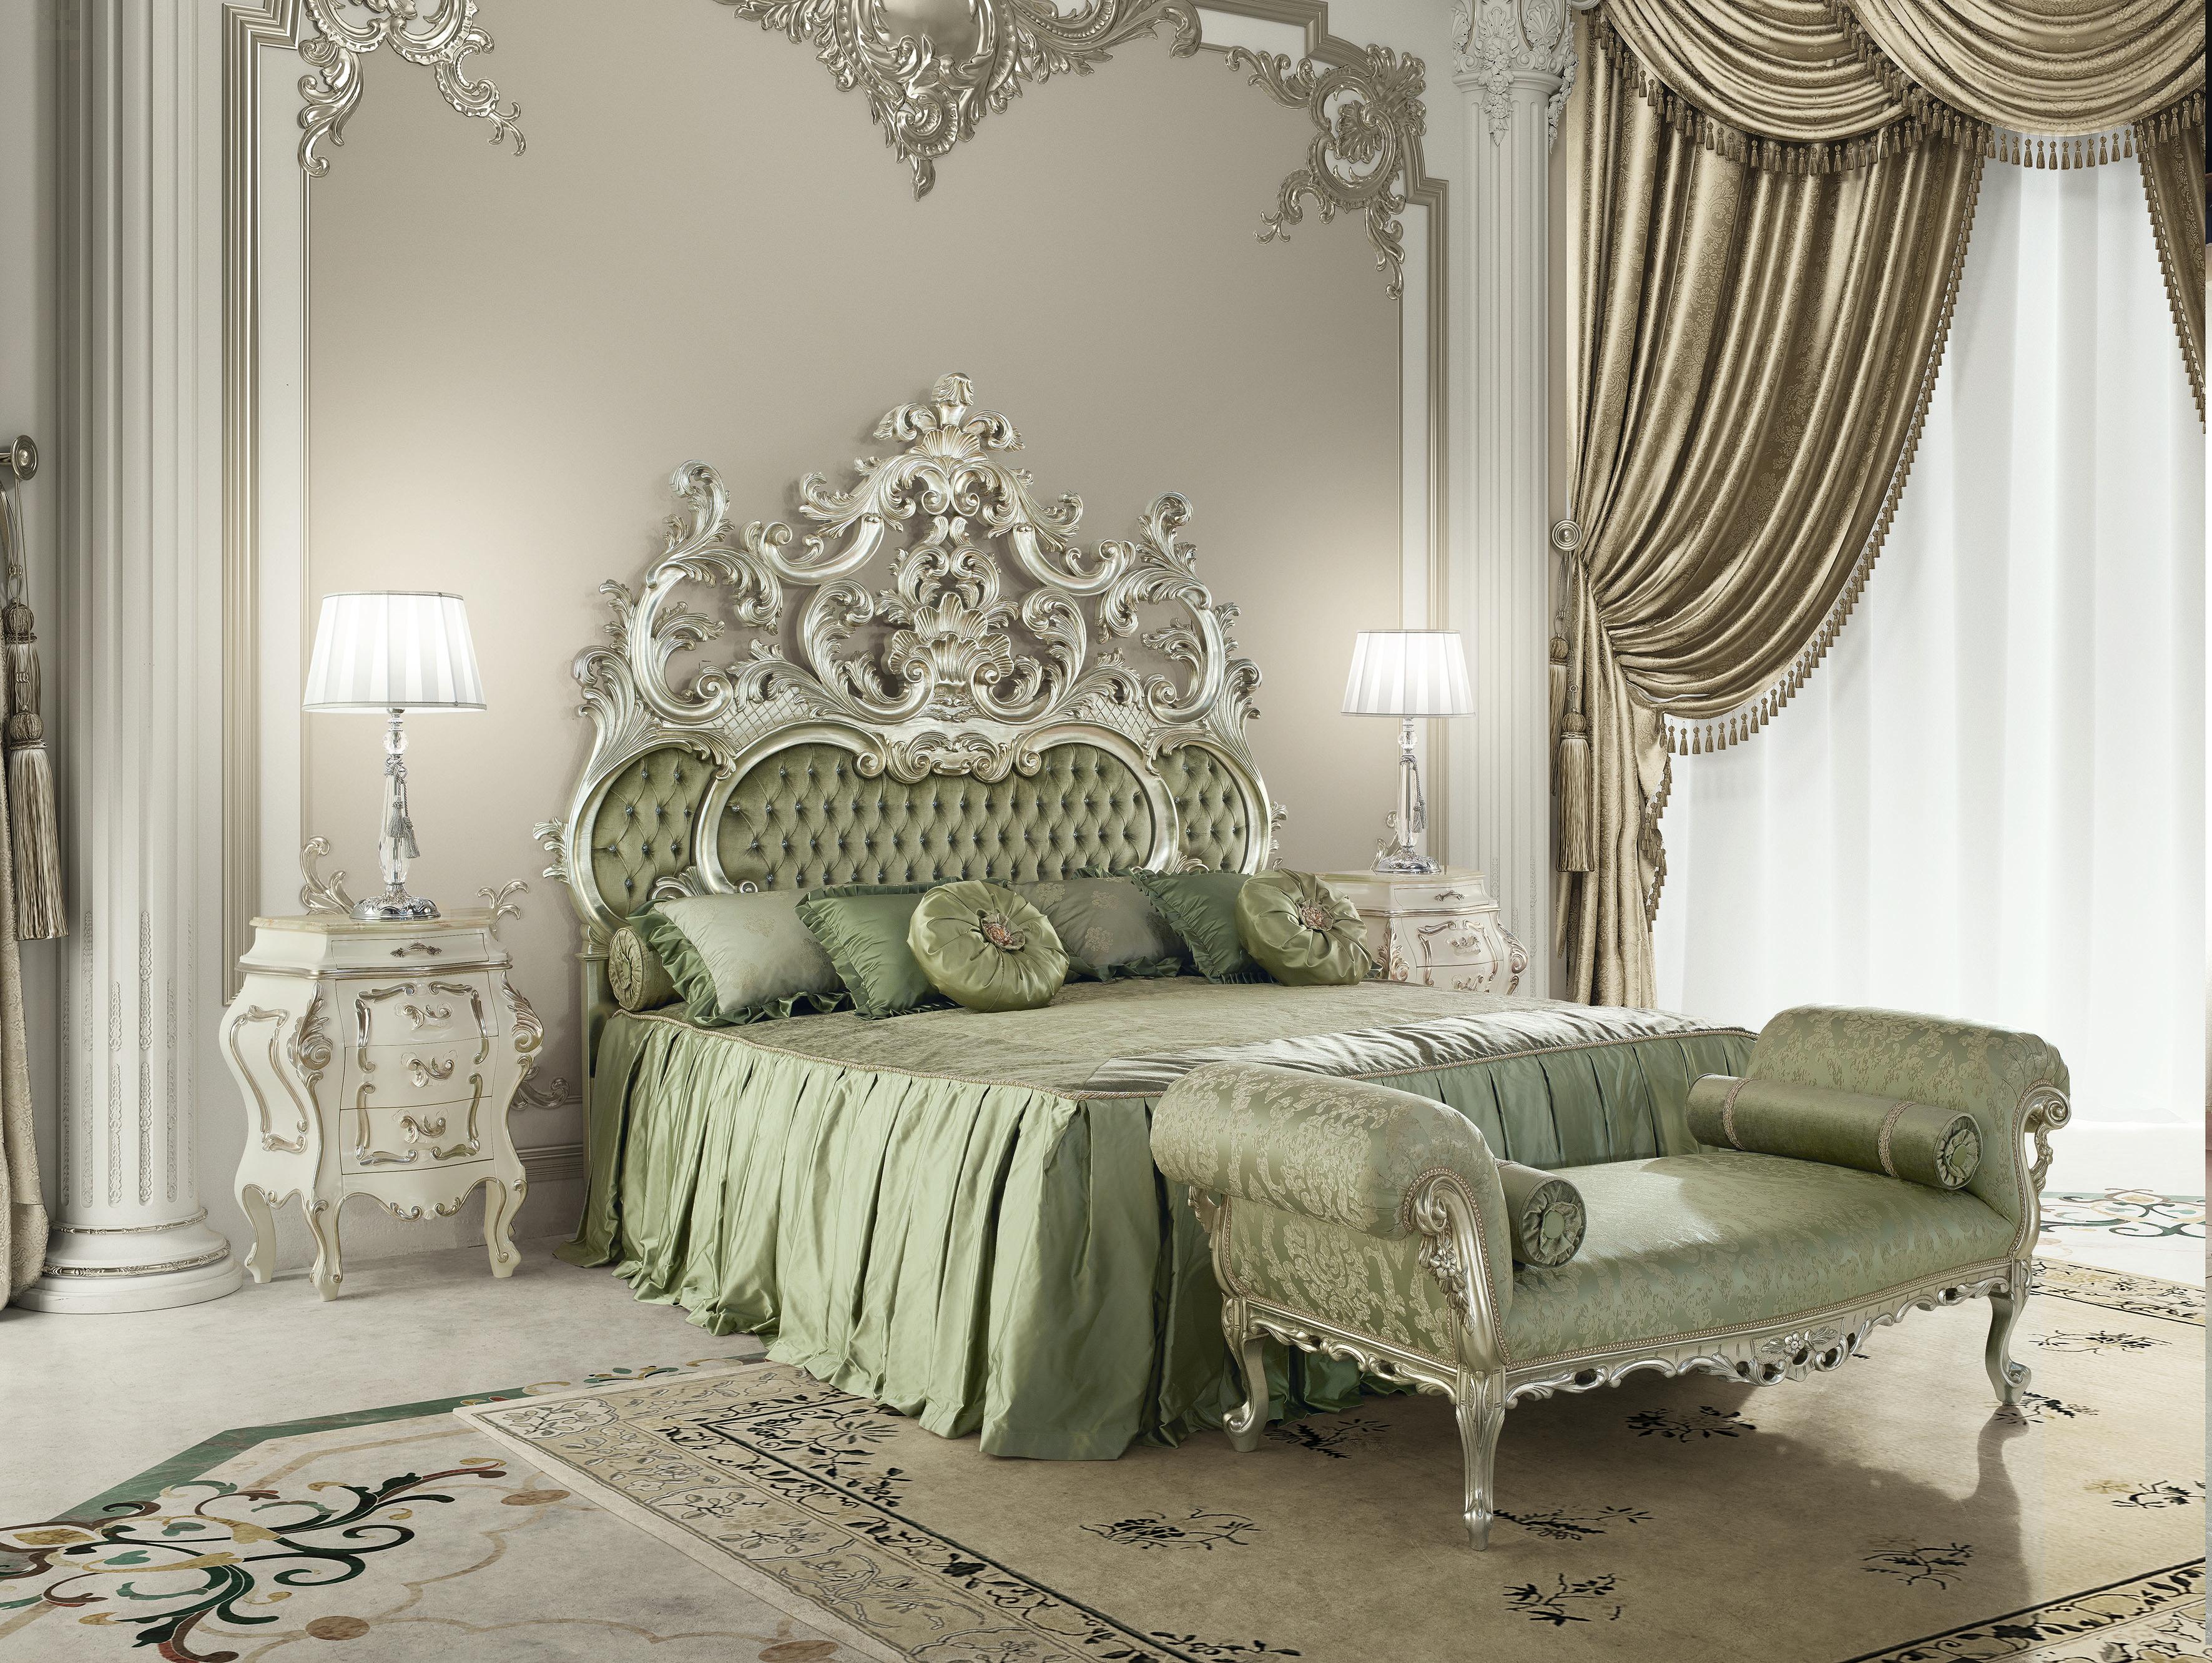 Diese weiße, barocke Bettbank des italienischen Möbelherstellers Modenese Luxury Interiors ist ein äußerst elegantes und zugleich komfortables Stück für eine klassische Einrichtung, die sich am besten in Wohn-, Schlaf-, Aufenthalts- oder